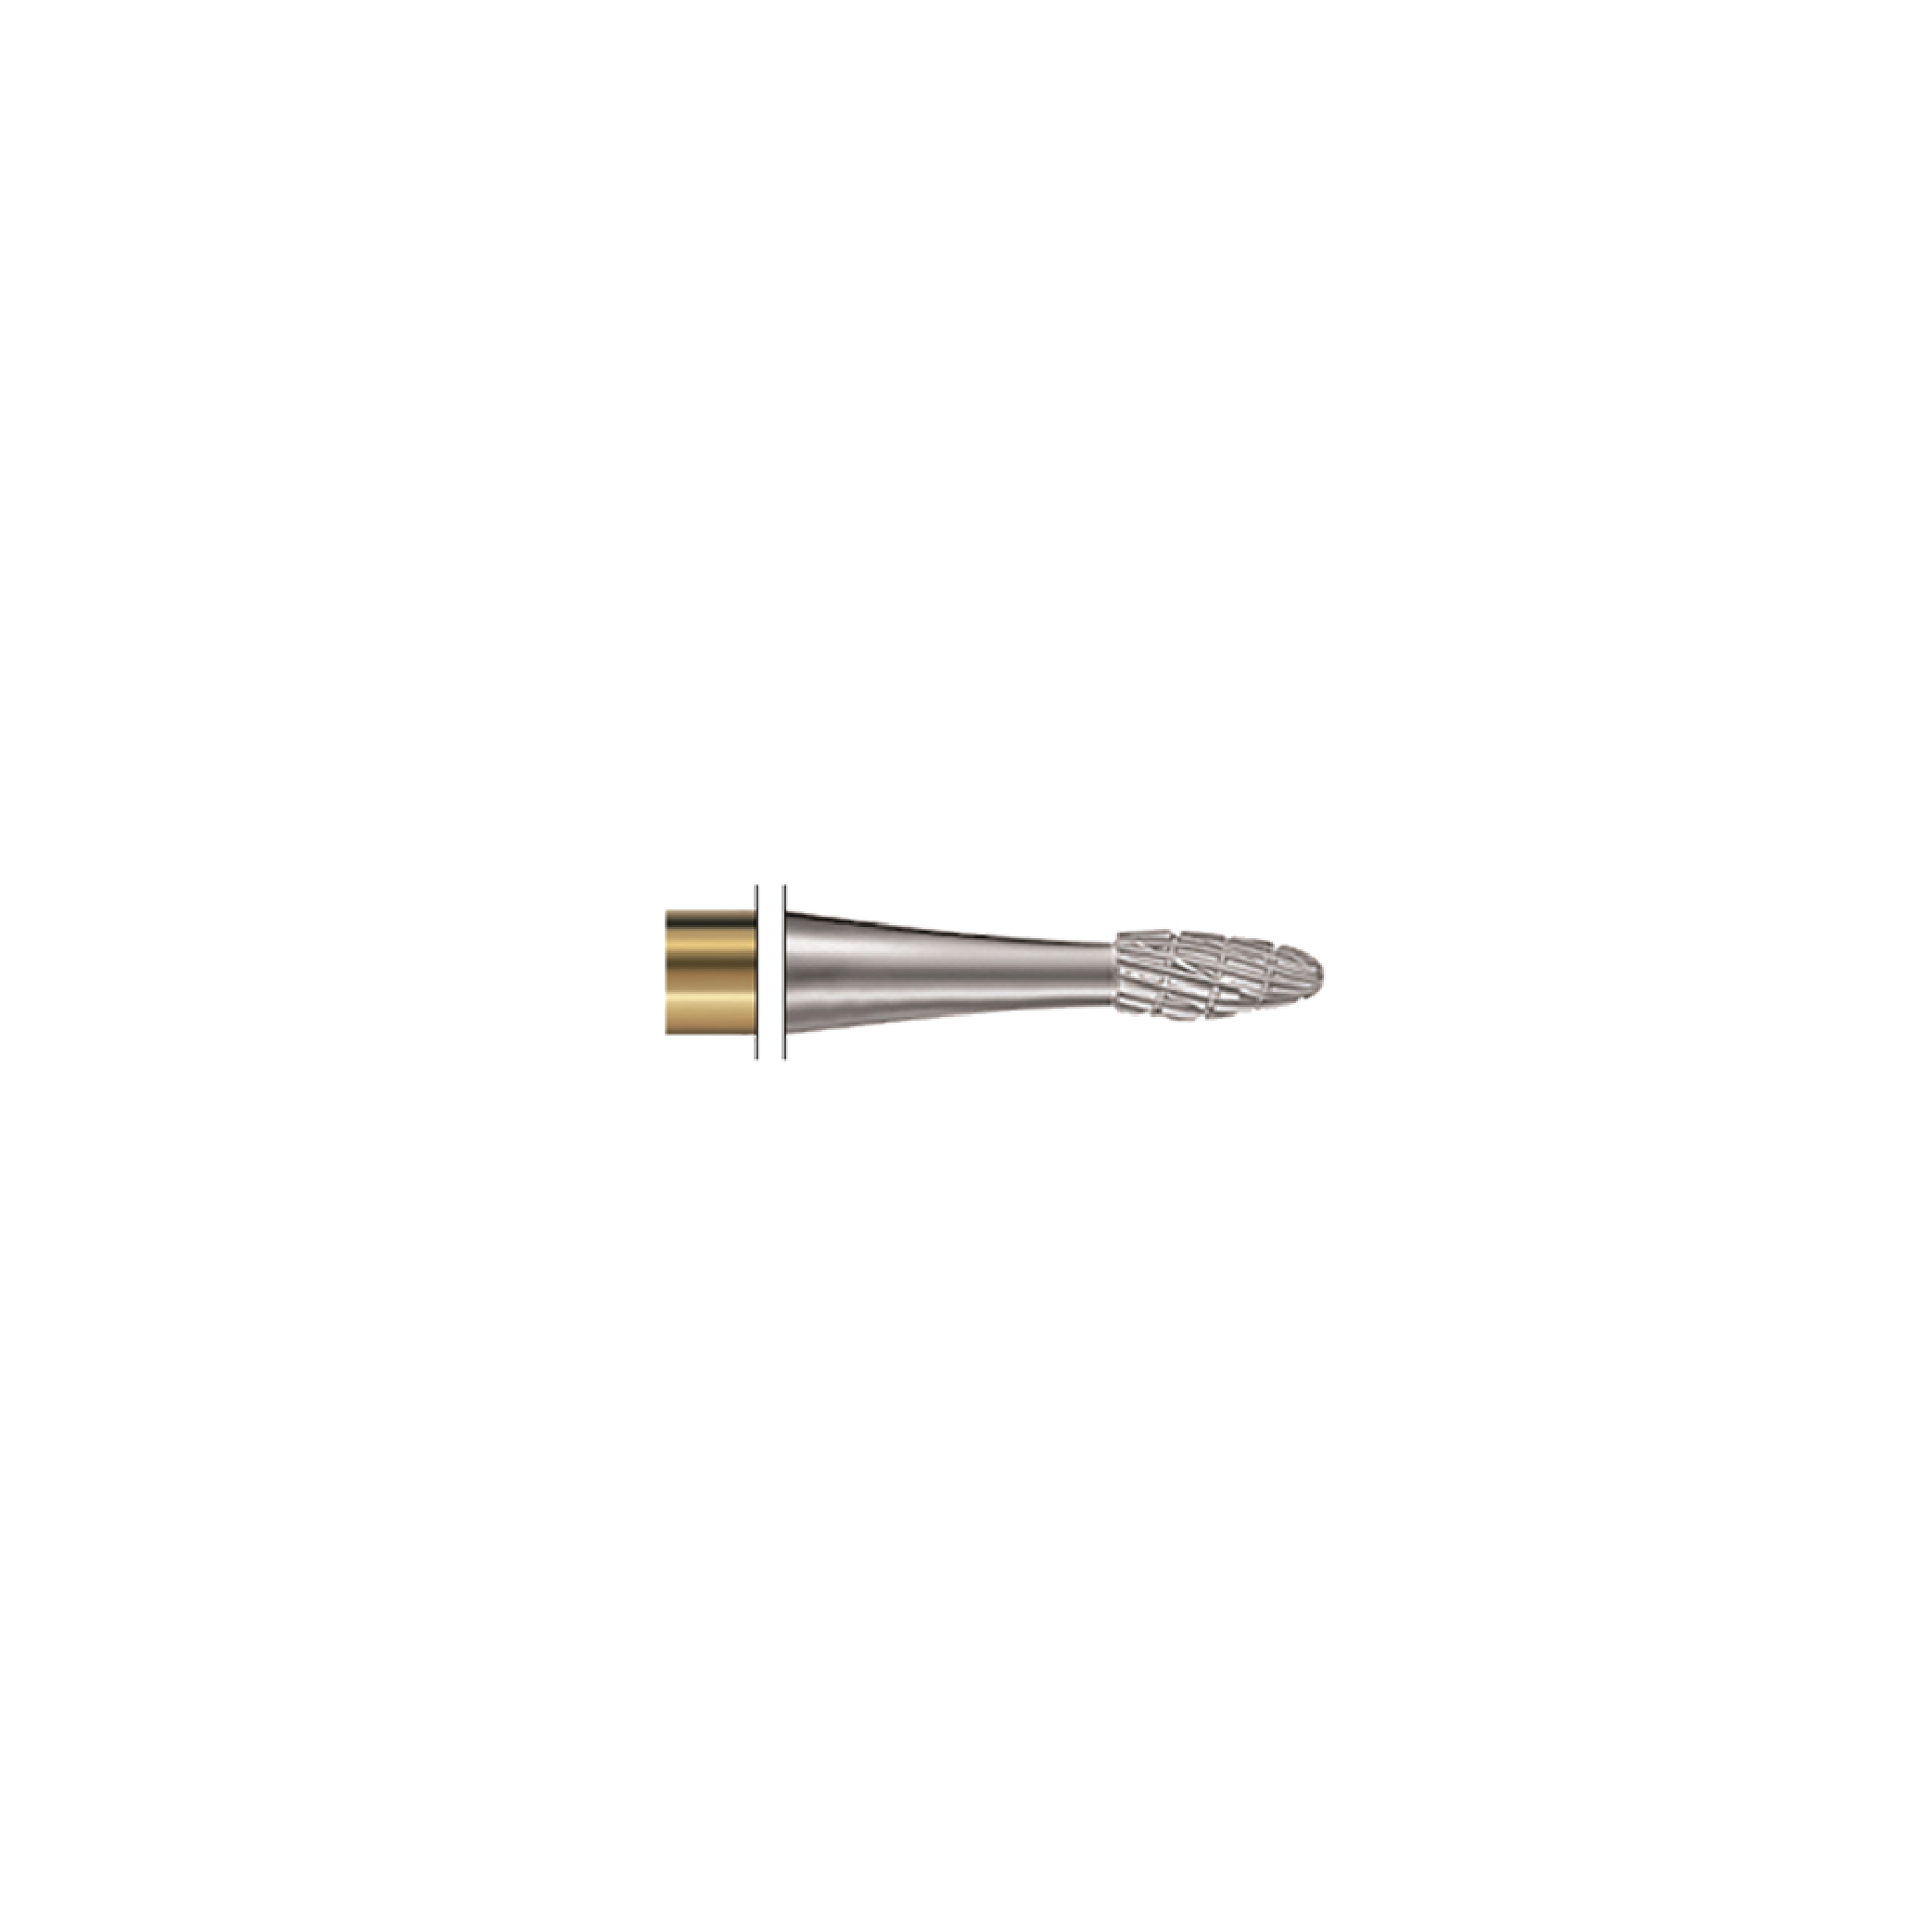 964: Mini "Flame" Tungsten Carbide Metal Cutter